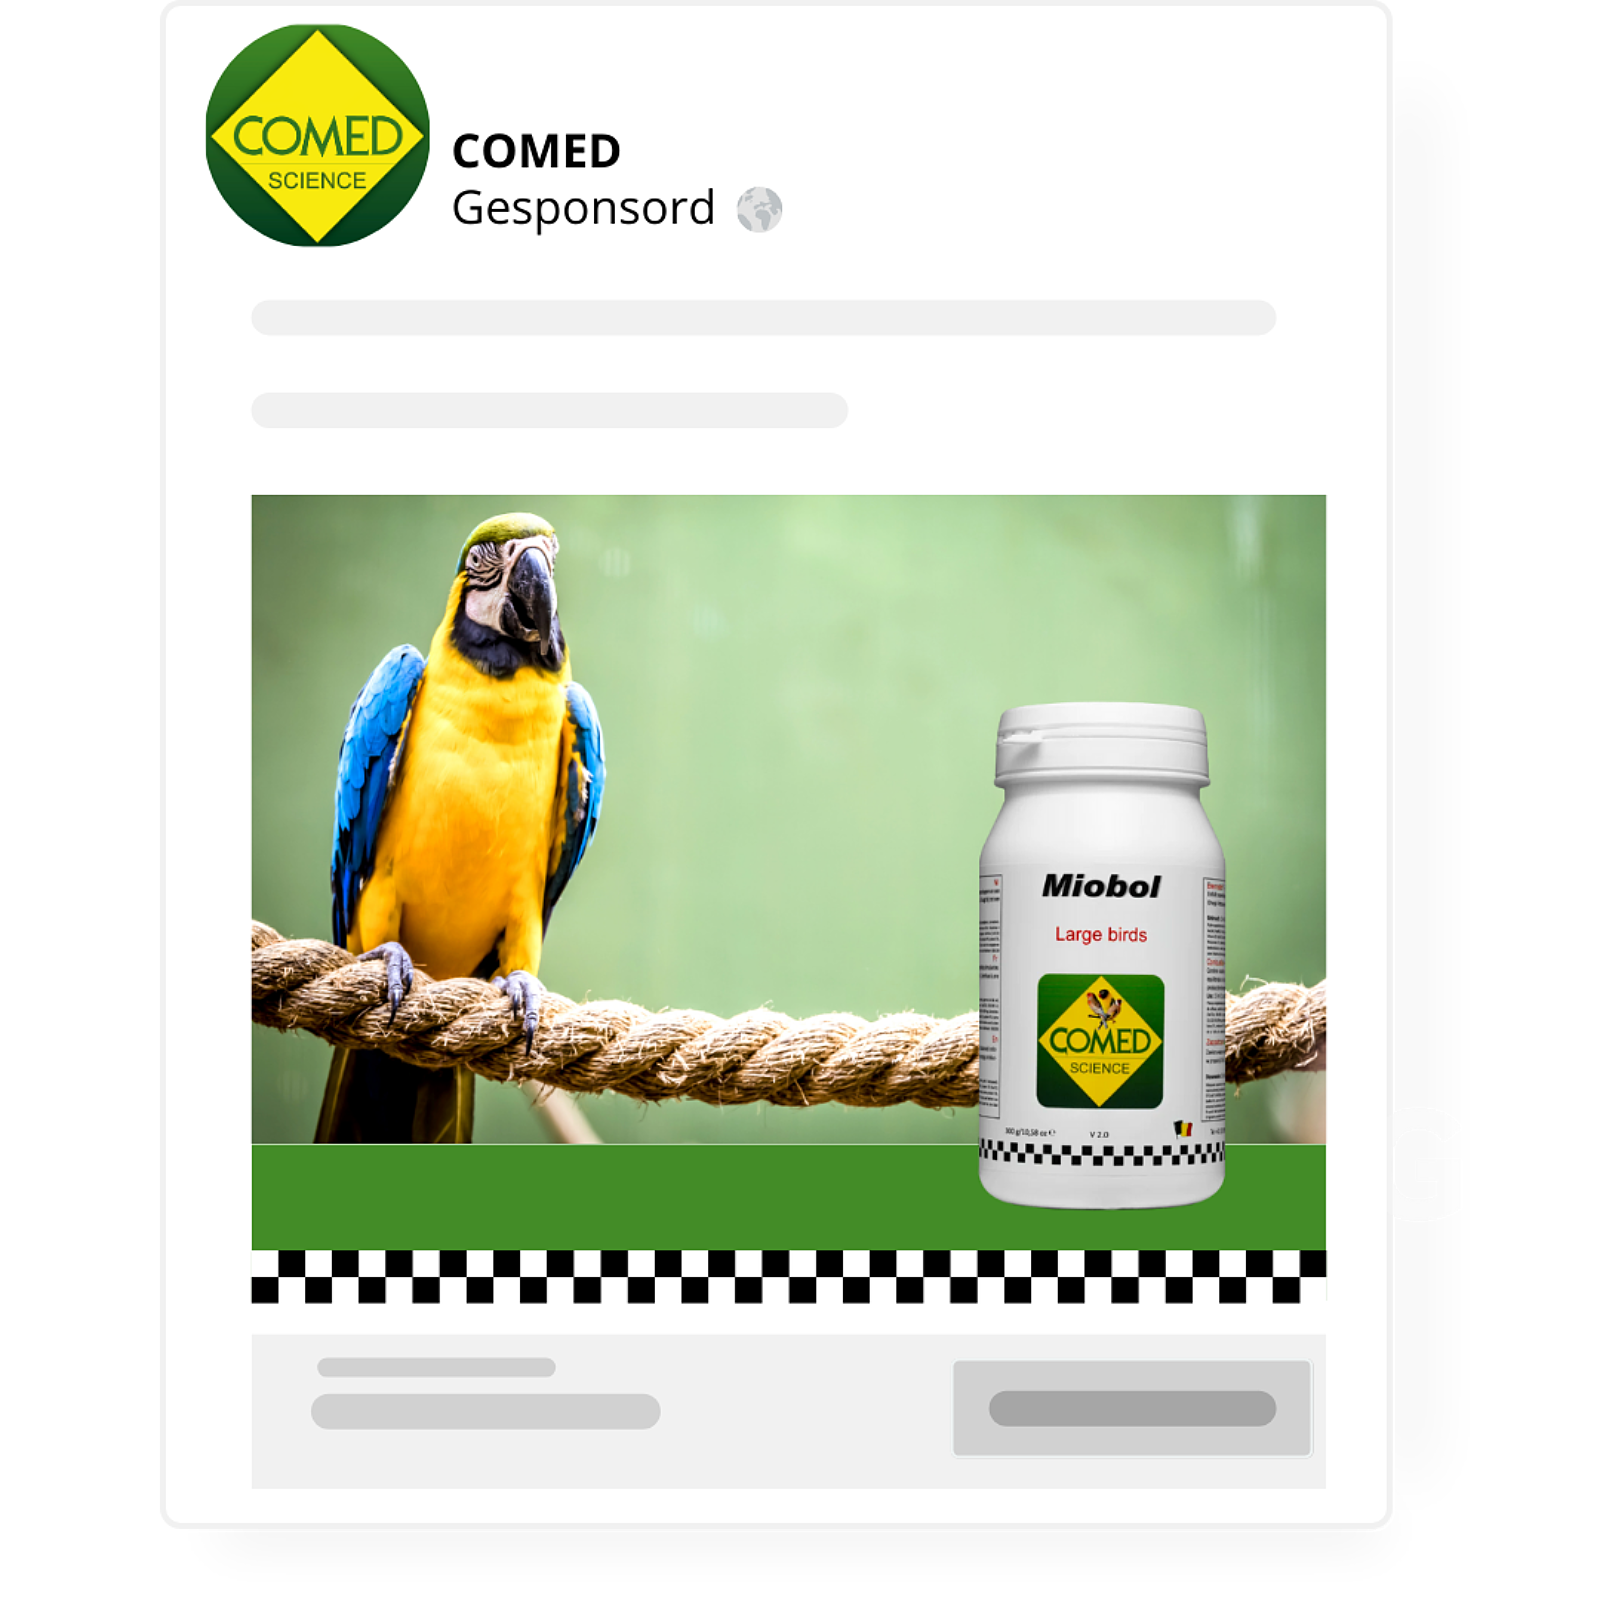 Mock-up van een gesponsorde Facebook-advertentie voor een product van Comed